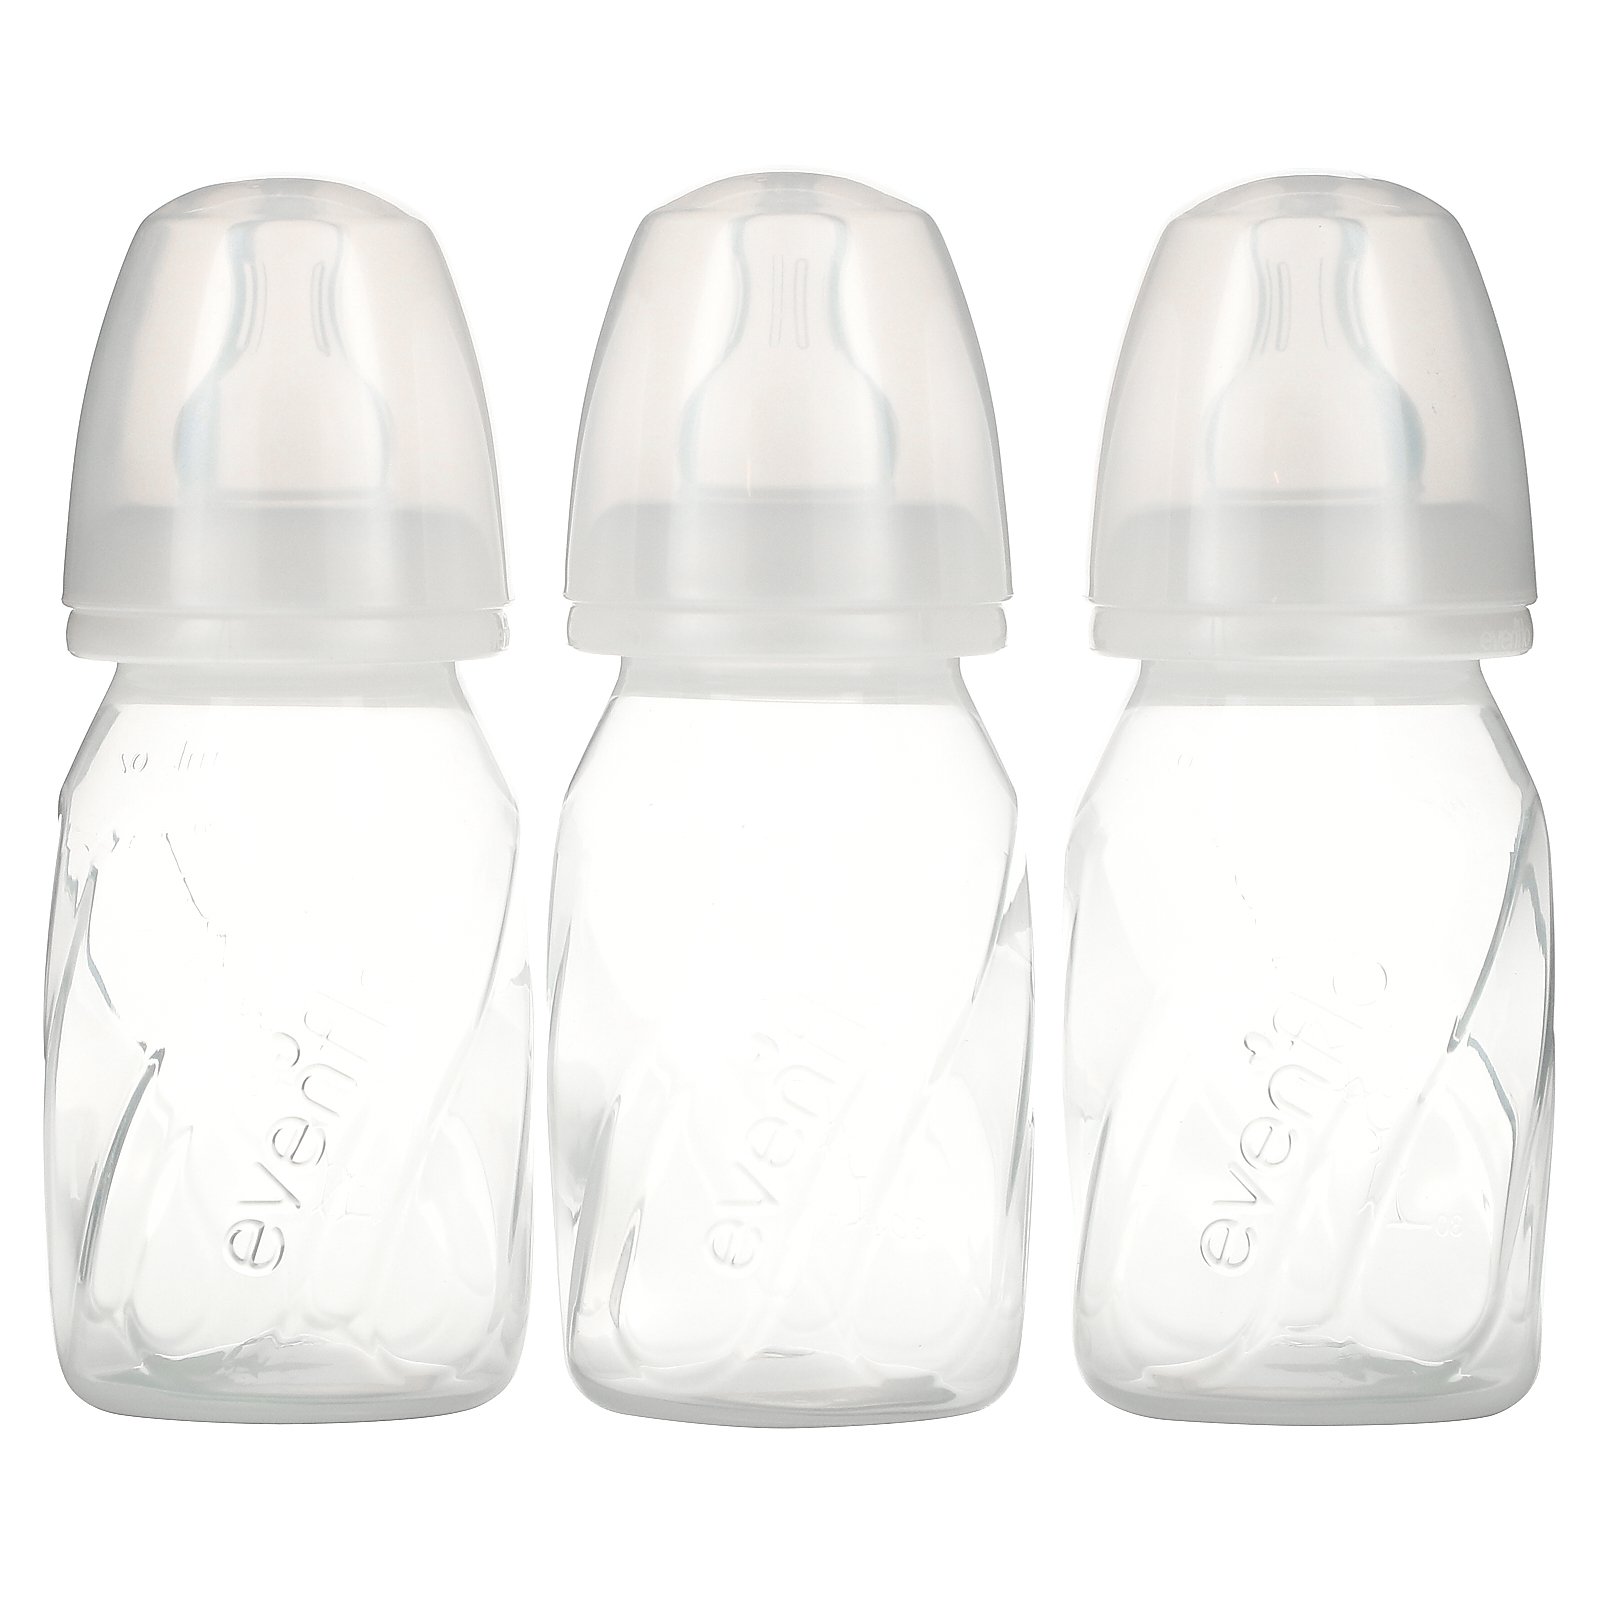 Бутылочки прозрачные. Прозрачный флакон. Задиг прозрачнвй флаелн. Флакон 6 мл. Бутылка для кормления новорожденных с медленным потоком.